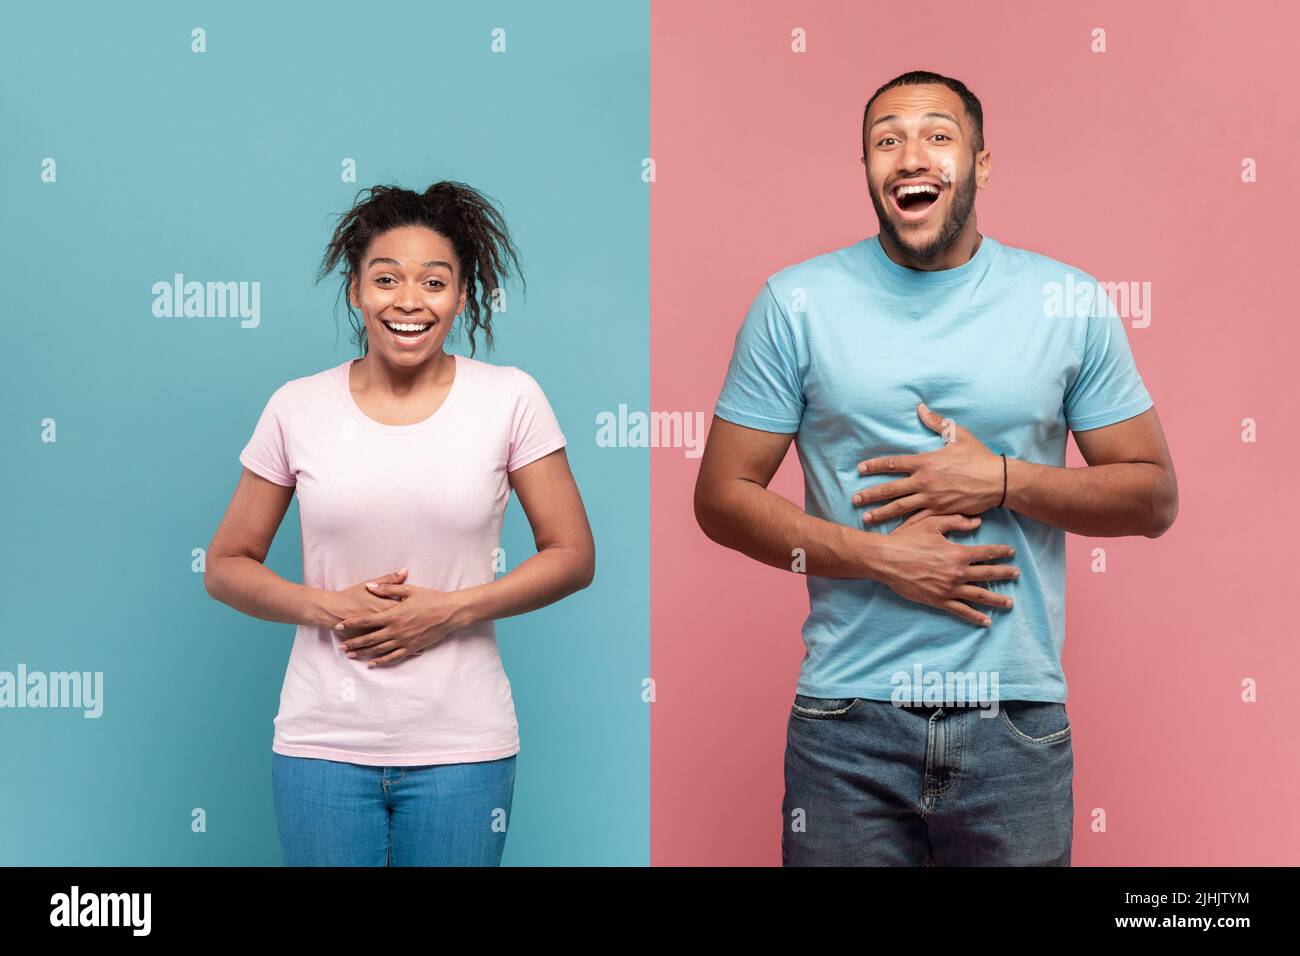 Esilarante donna nera e uomo che toccano gli stomachi dalla risata, non può smettere di ridere, sfondo rosa e blu Foto Stock